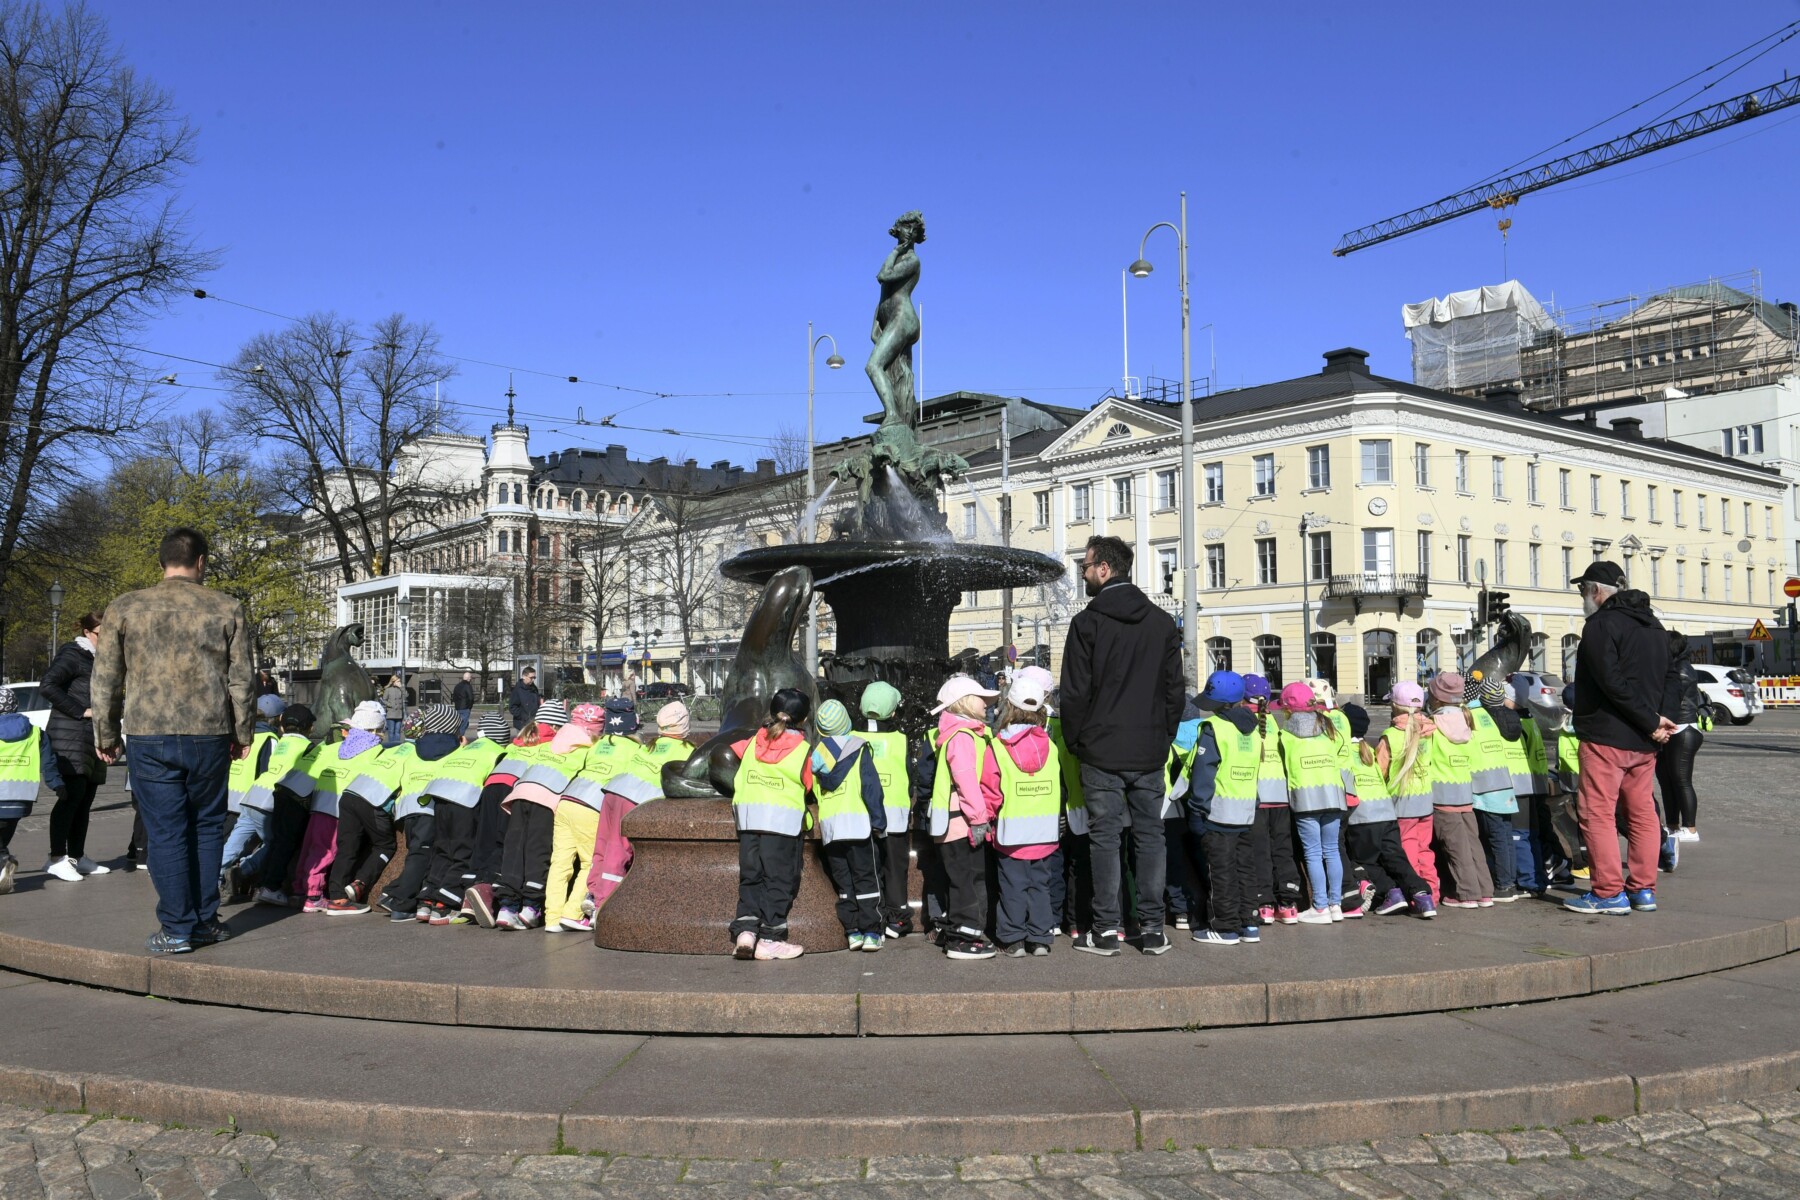 广场上，背景中有建筑，几十名儿童与几名教师一起聚拢在一尊金属雕像周围，雕像的底座很高。